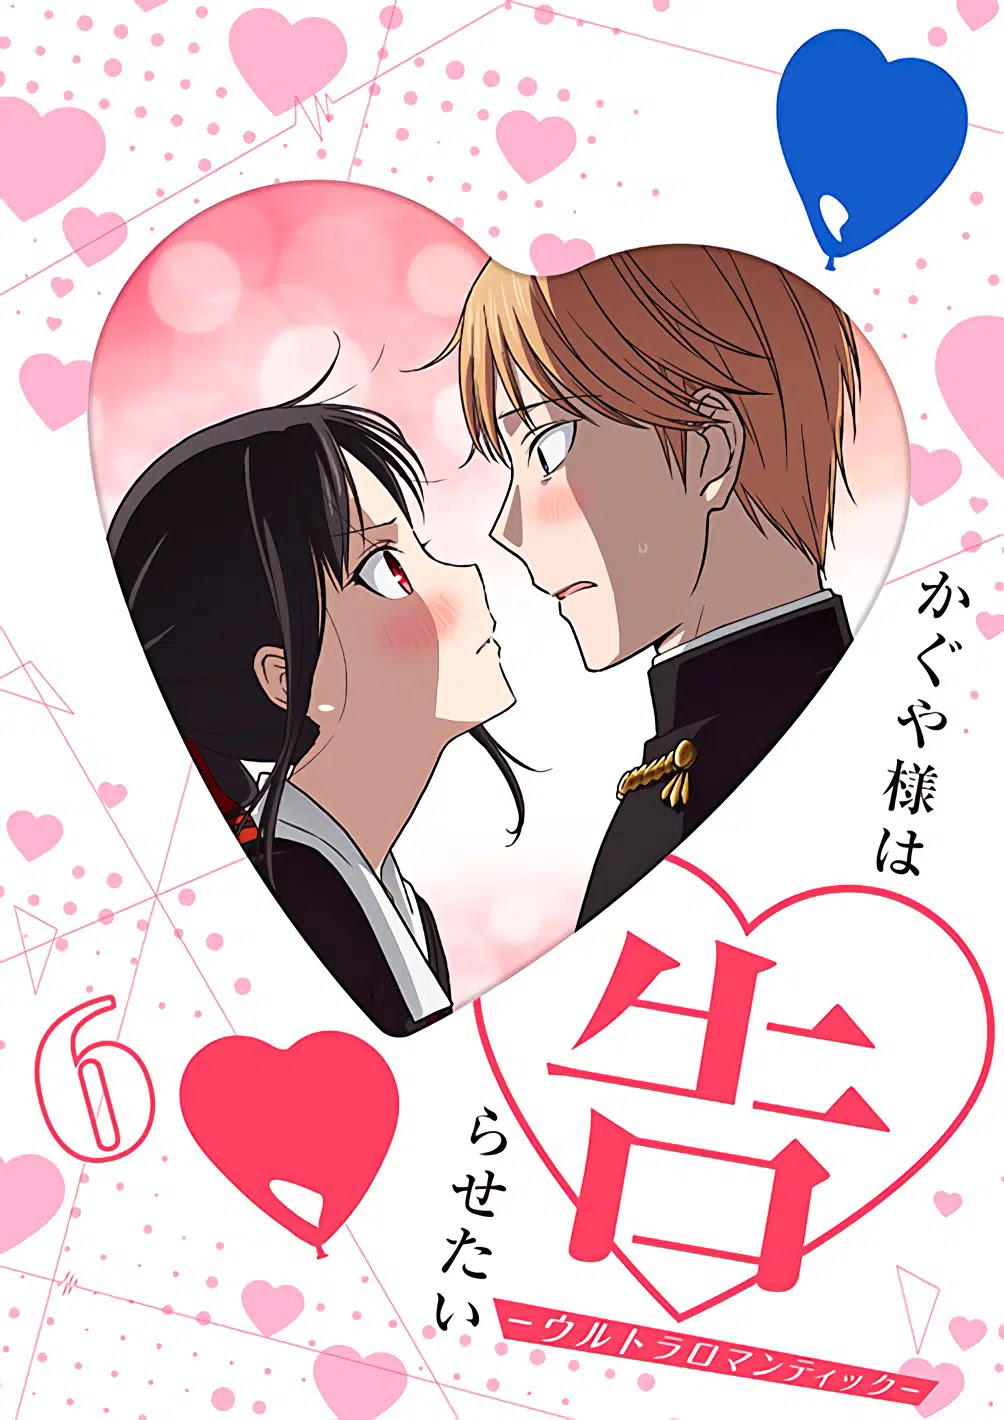 ♡ Kaguya-sama: Love Is War -Ultra Romantic- Official Trailer